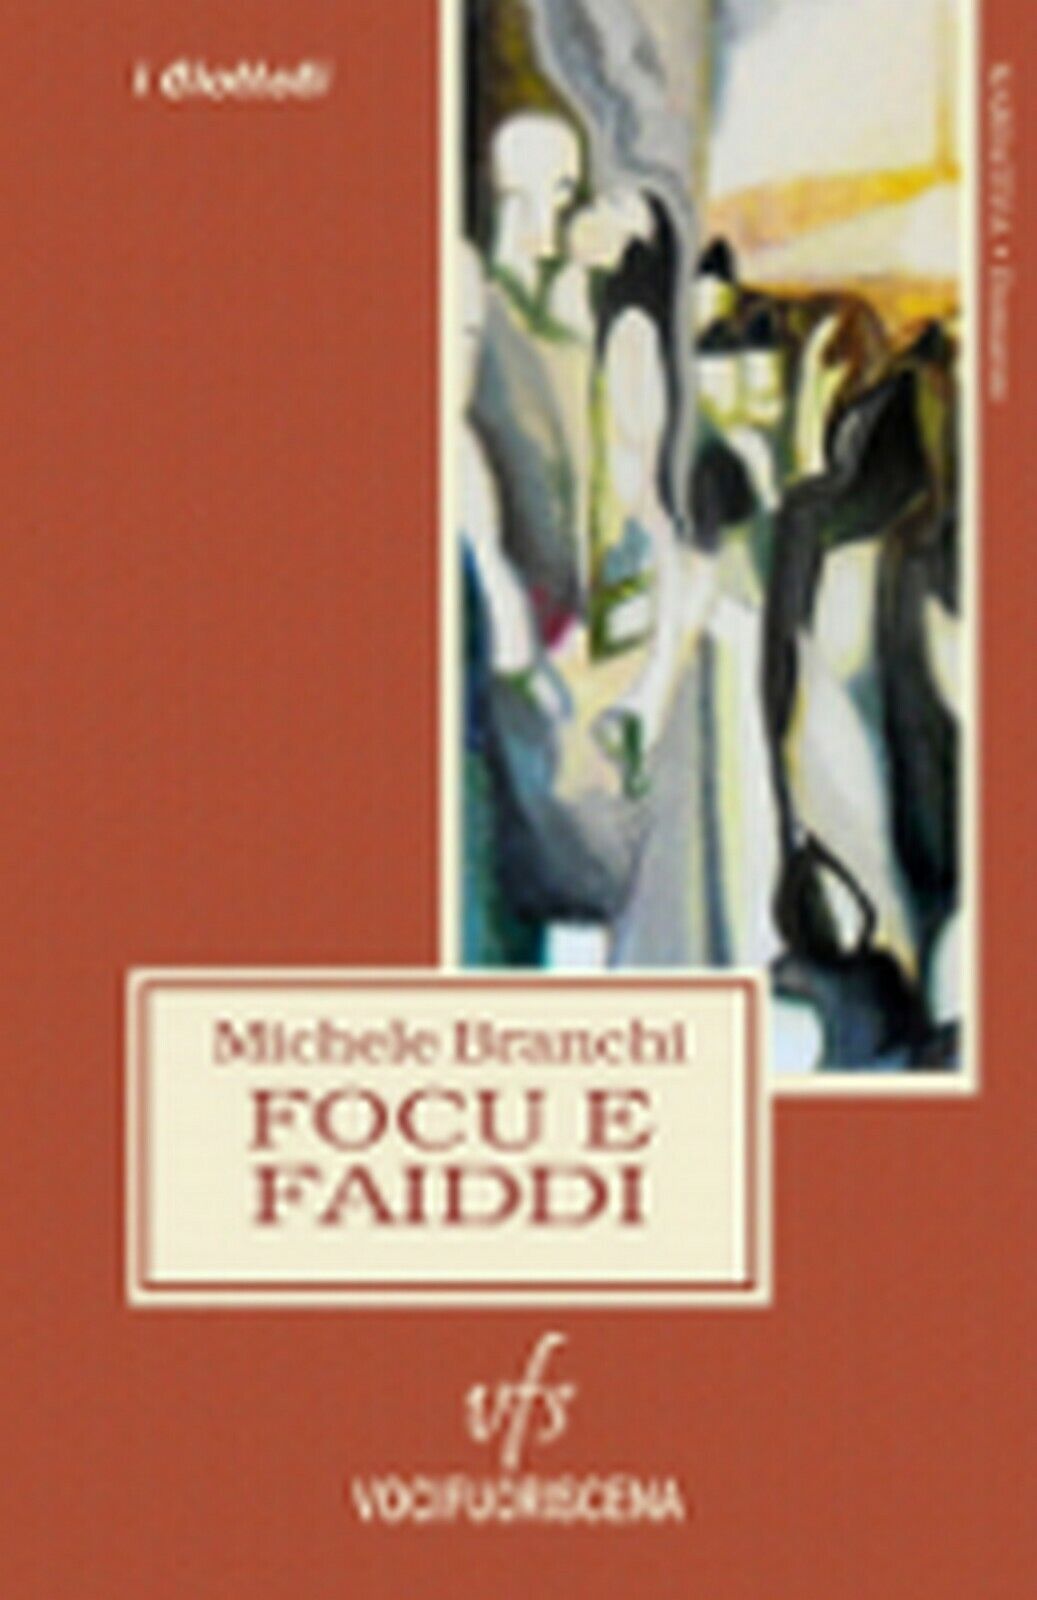 FOCU E FAIDDI  di Michele Branchi,  2018,  Vocifuoriscena libro usato